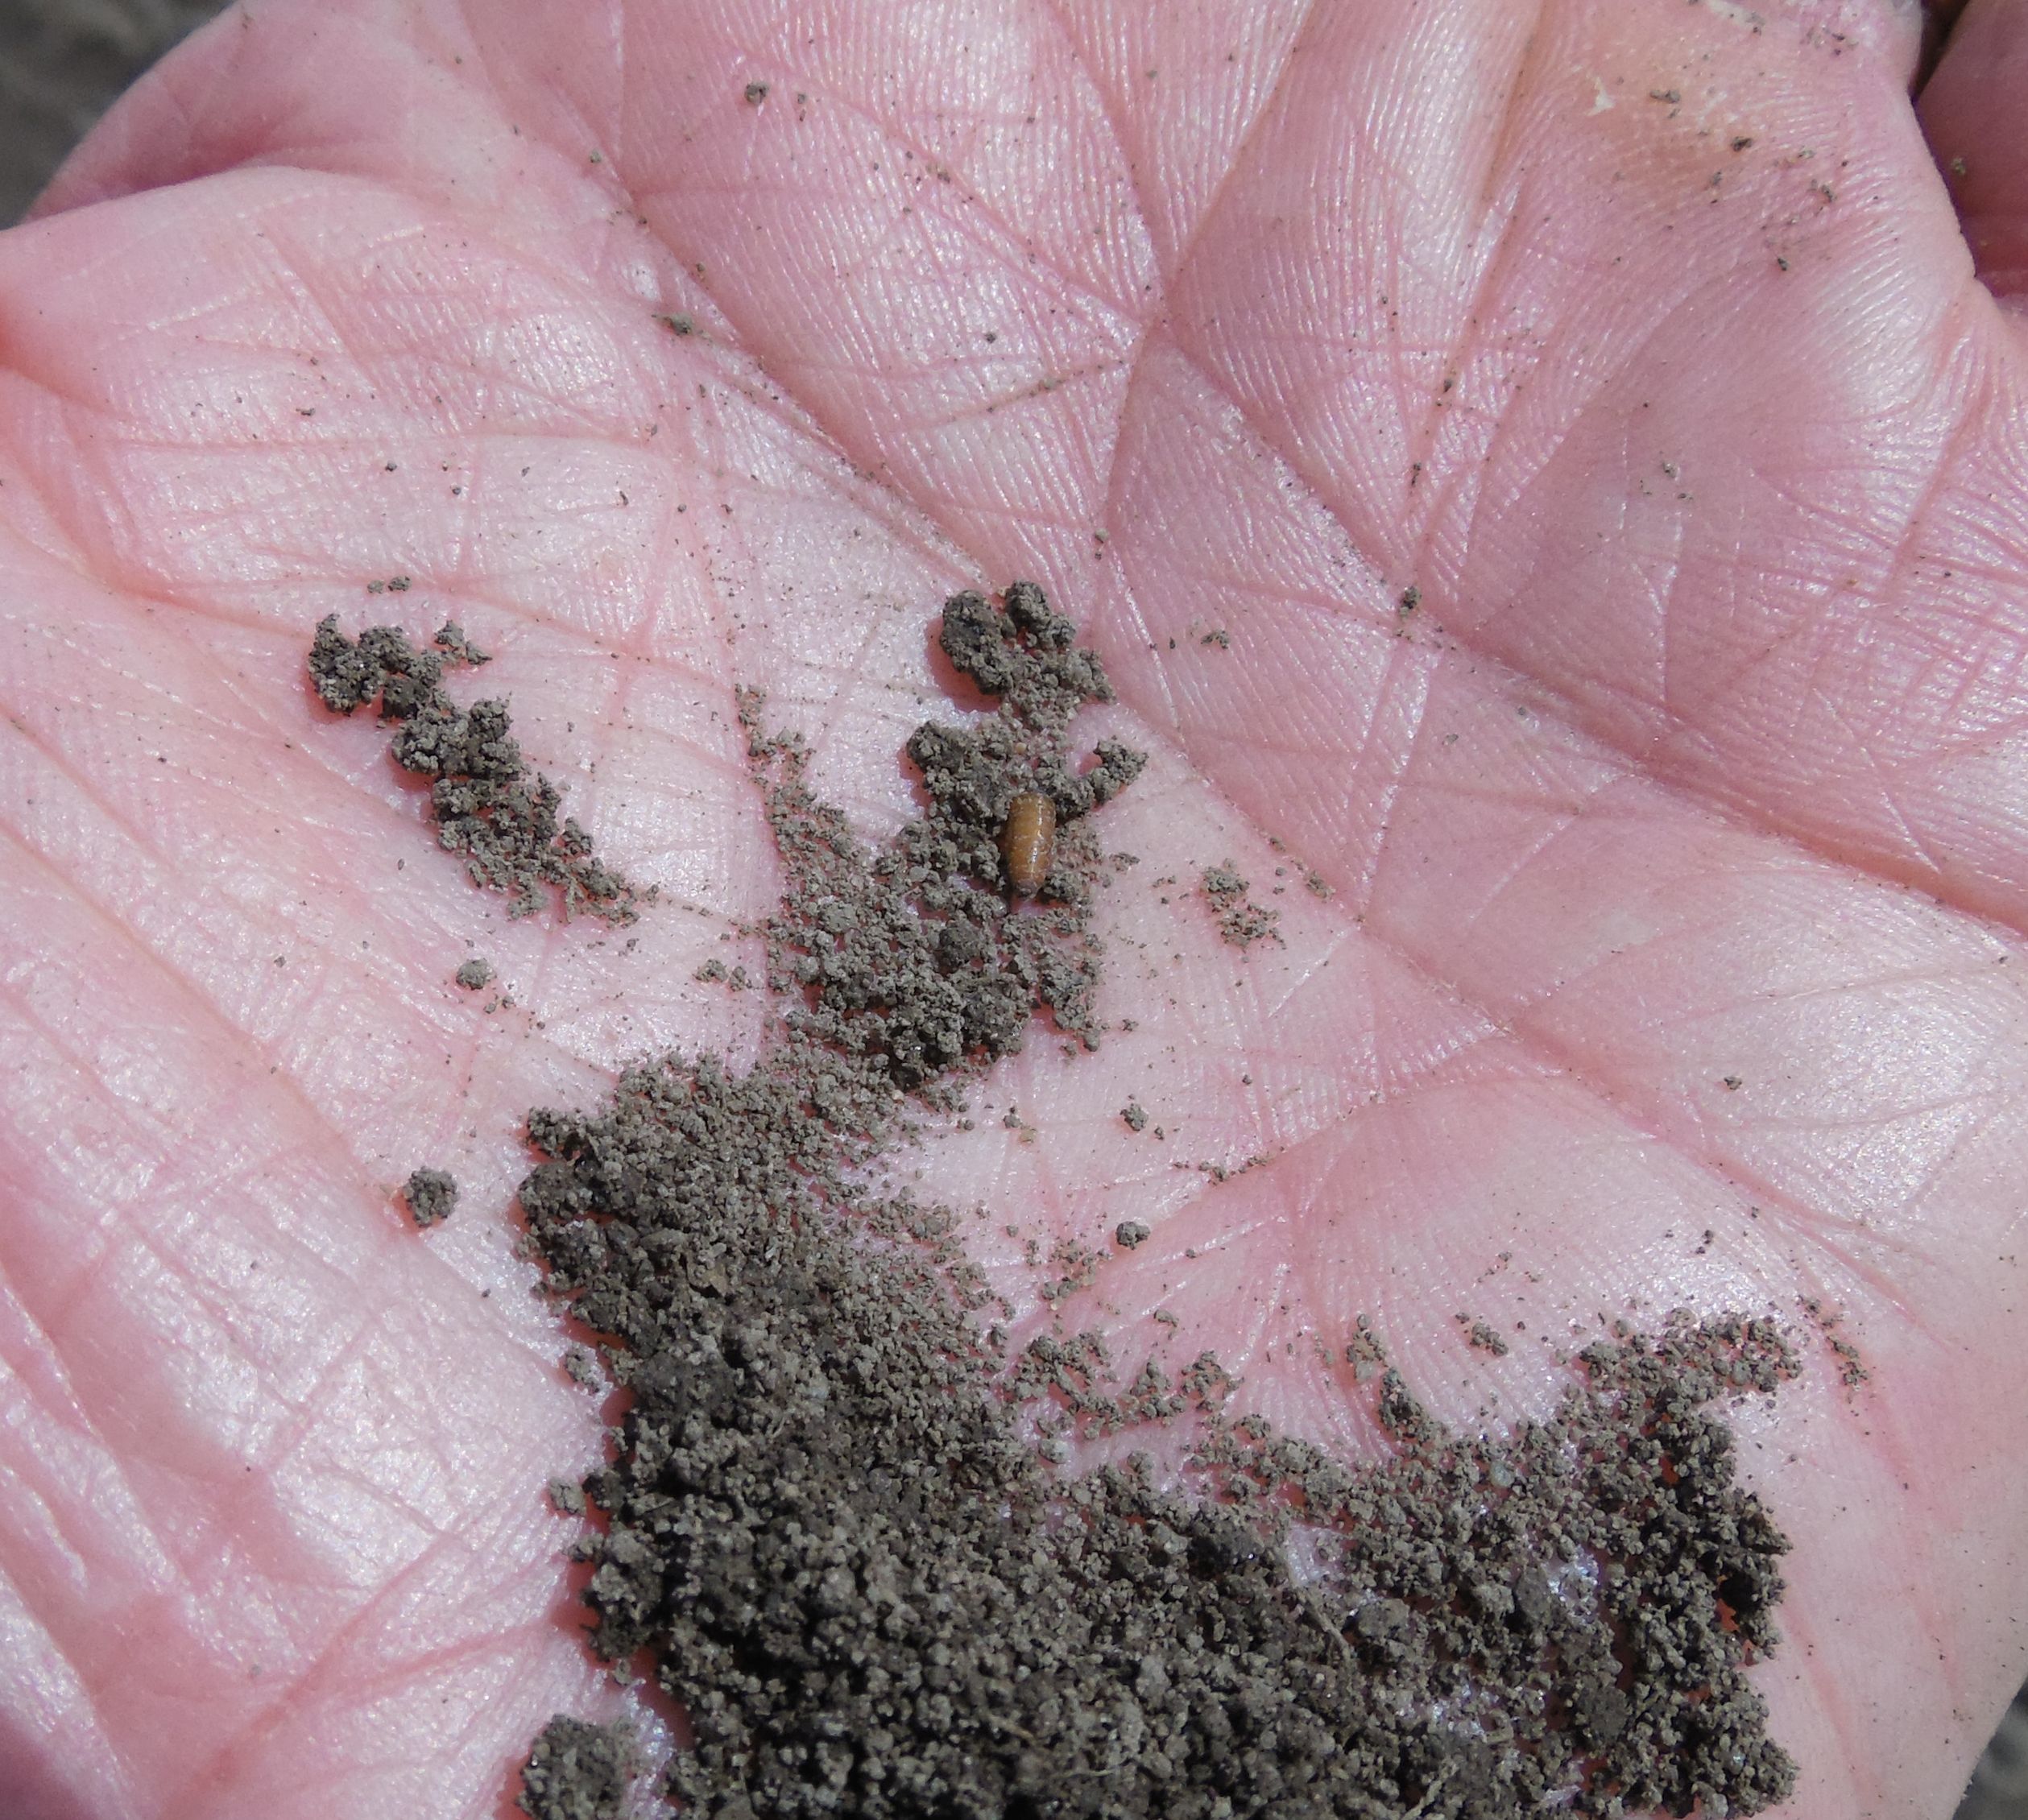 Seed corn maggot pupae.